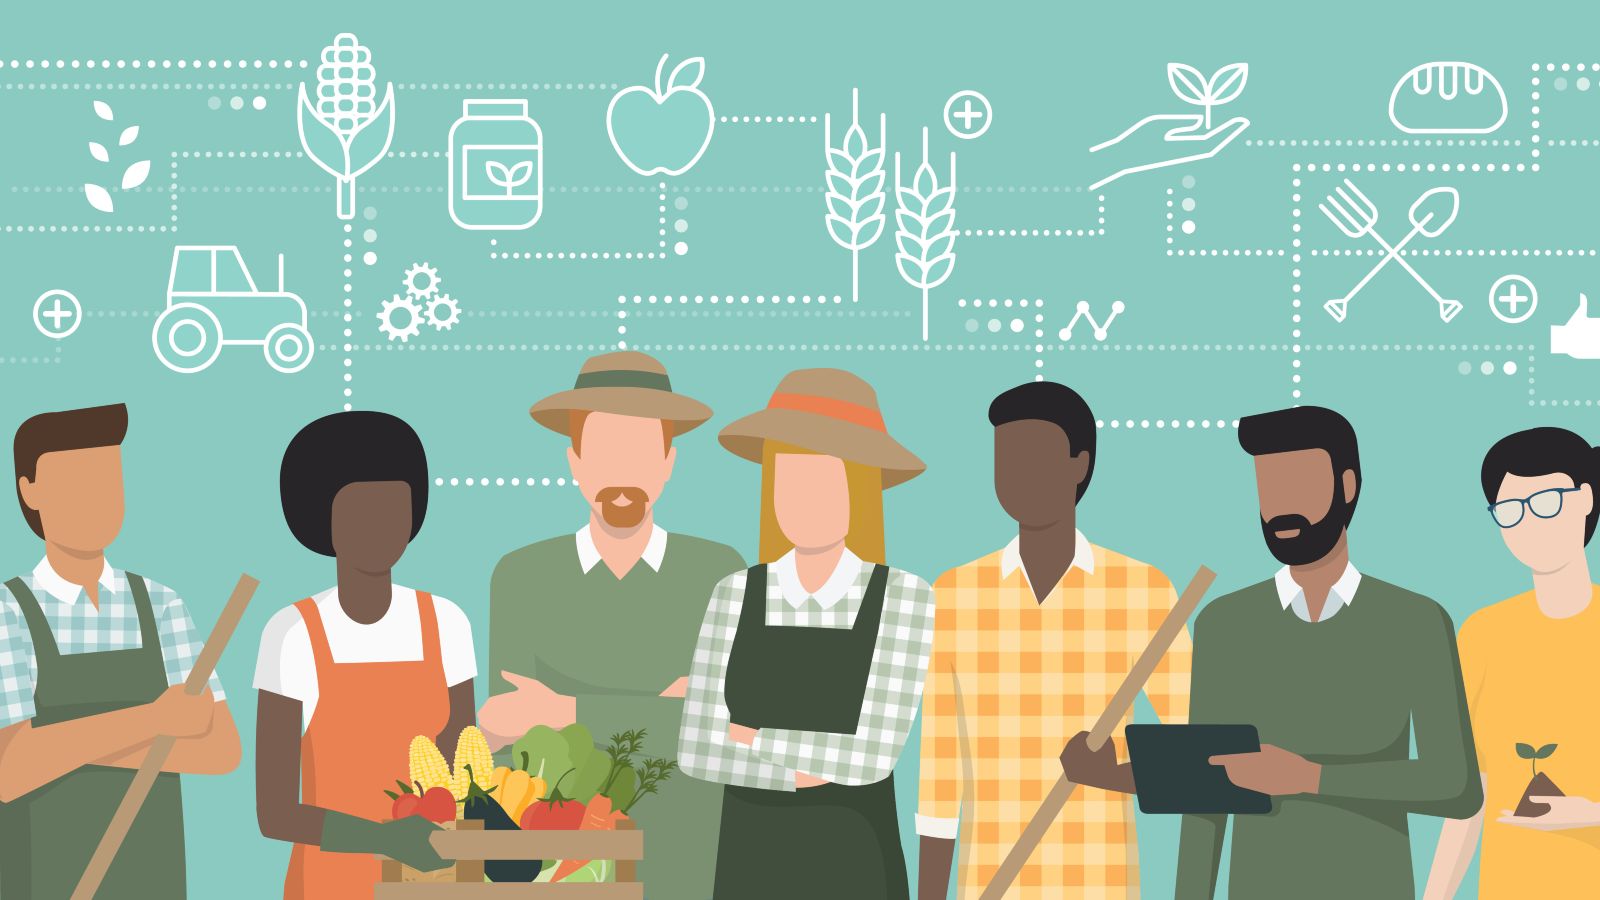 Eine digitale Illustration verbildlicht die Verbindungen zwischen verschiedenen  Kompartimenten eines Landwirtschaftssystems mit Hilfe von Piktogrammen und Punktlinien. Im Vordergrund steht eine Gruppe landwirtschaftlicher Arbeiter.